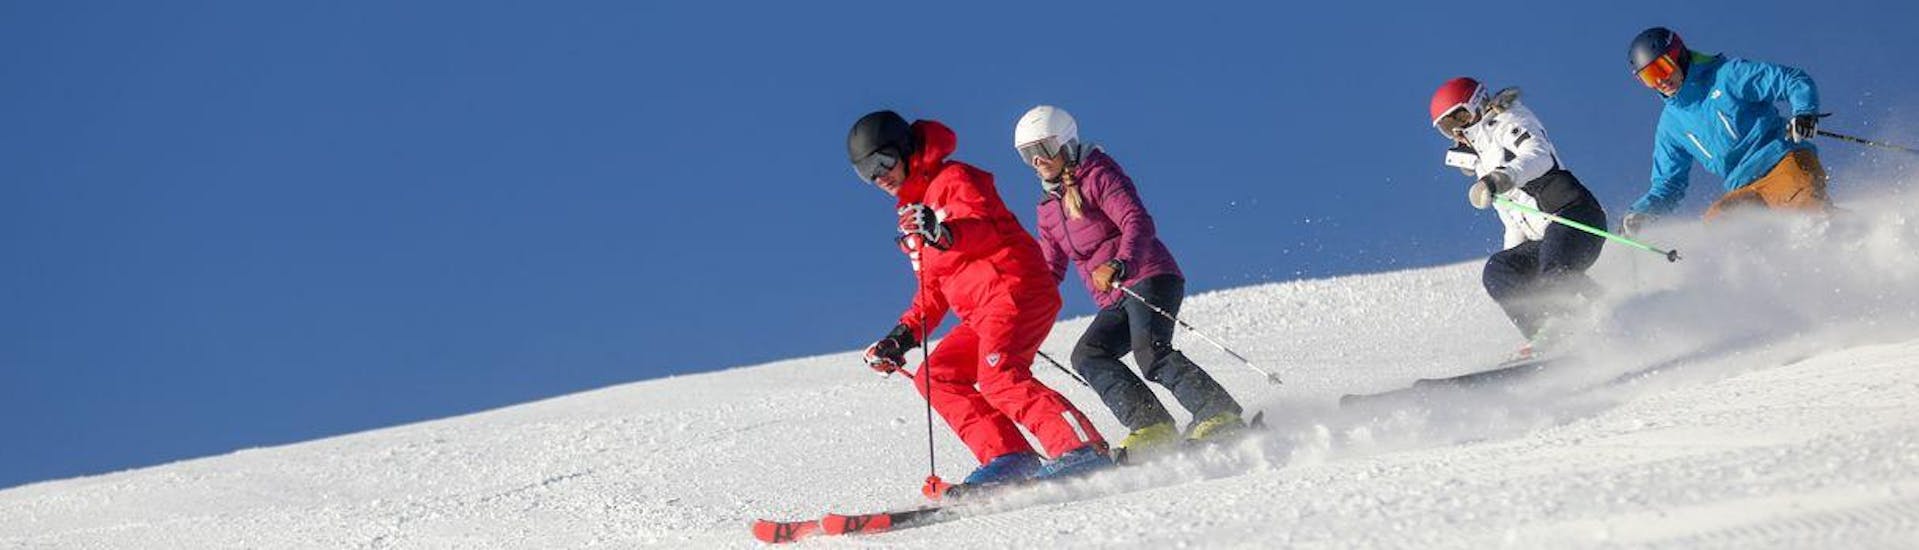 Skilessen voor volwassenen.